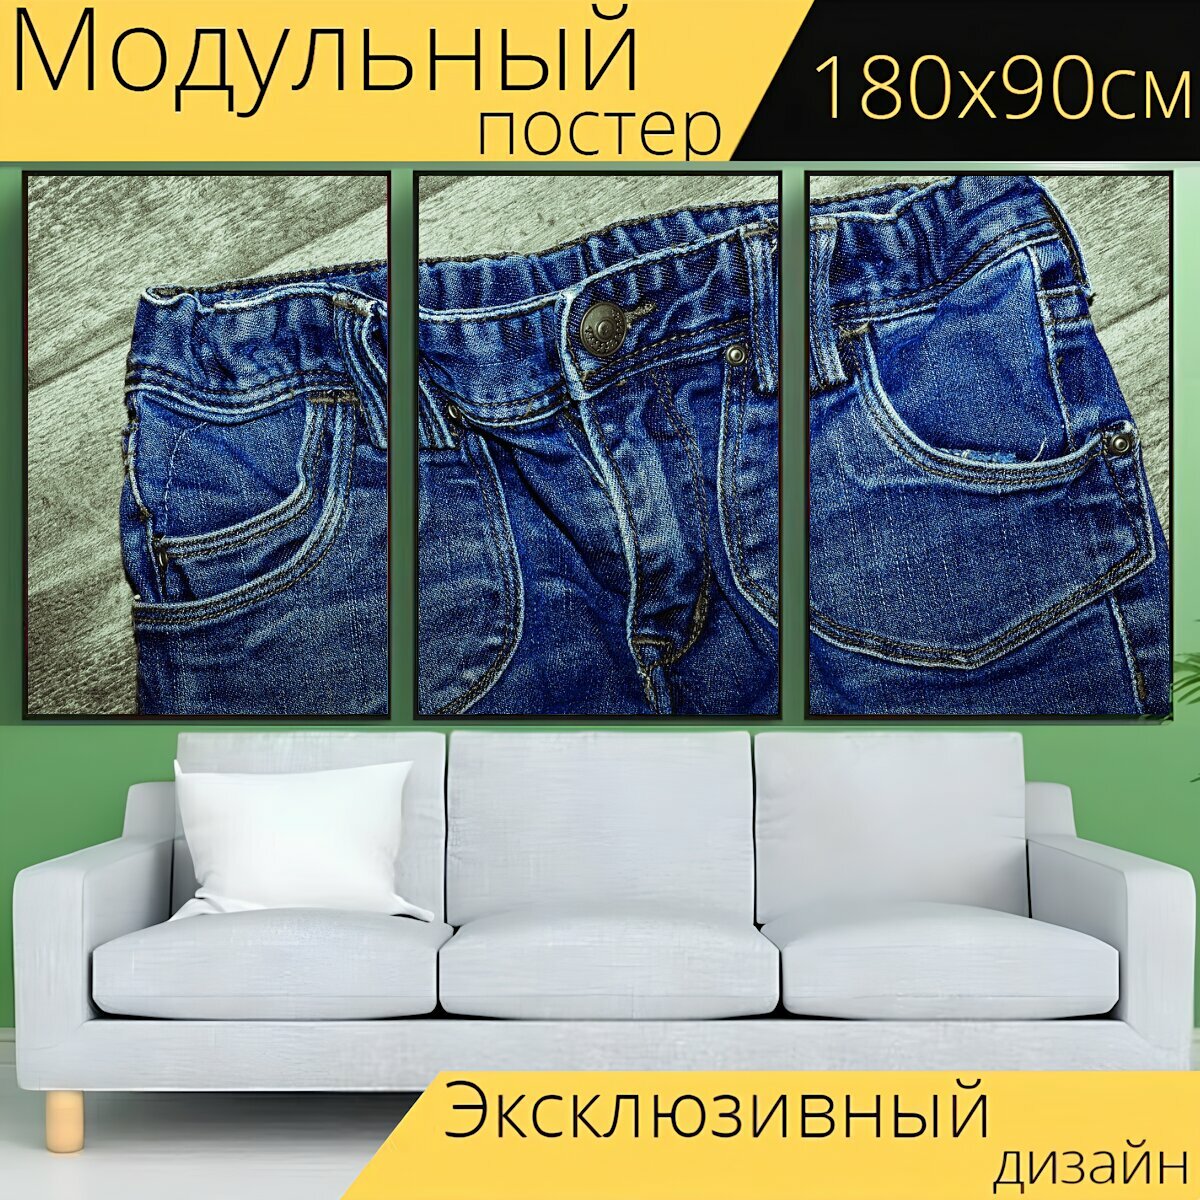 Модульный постер "Джинсы, штаны, одежда" 180 x 90 см. для интерьера